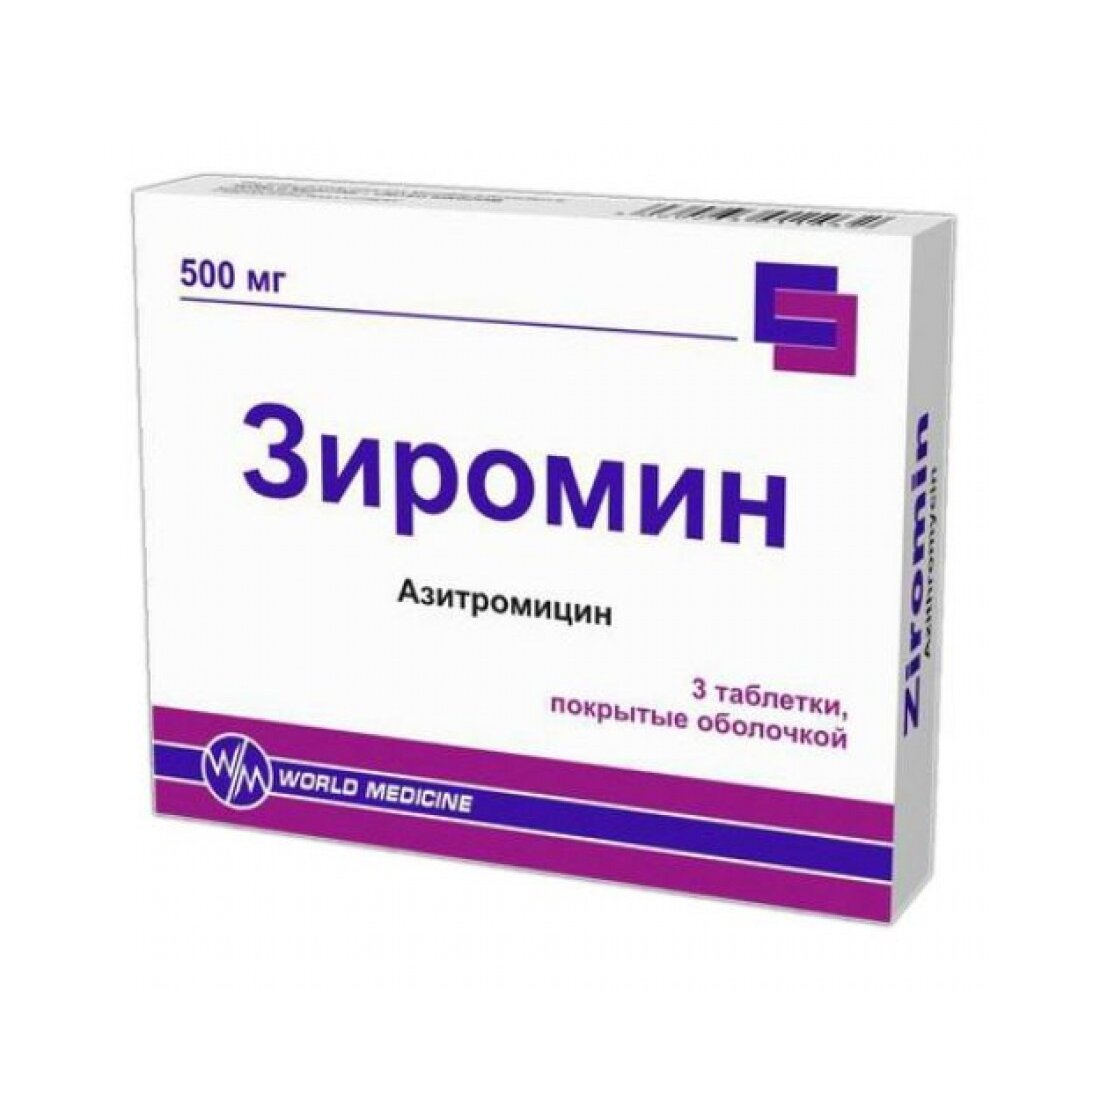 Зиромин таблетки п/об пленочной 500 мг 3 шт.